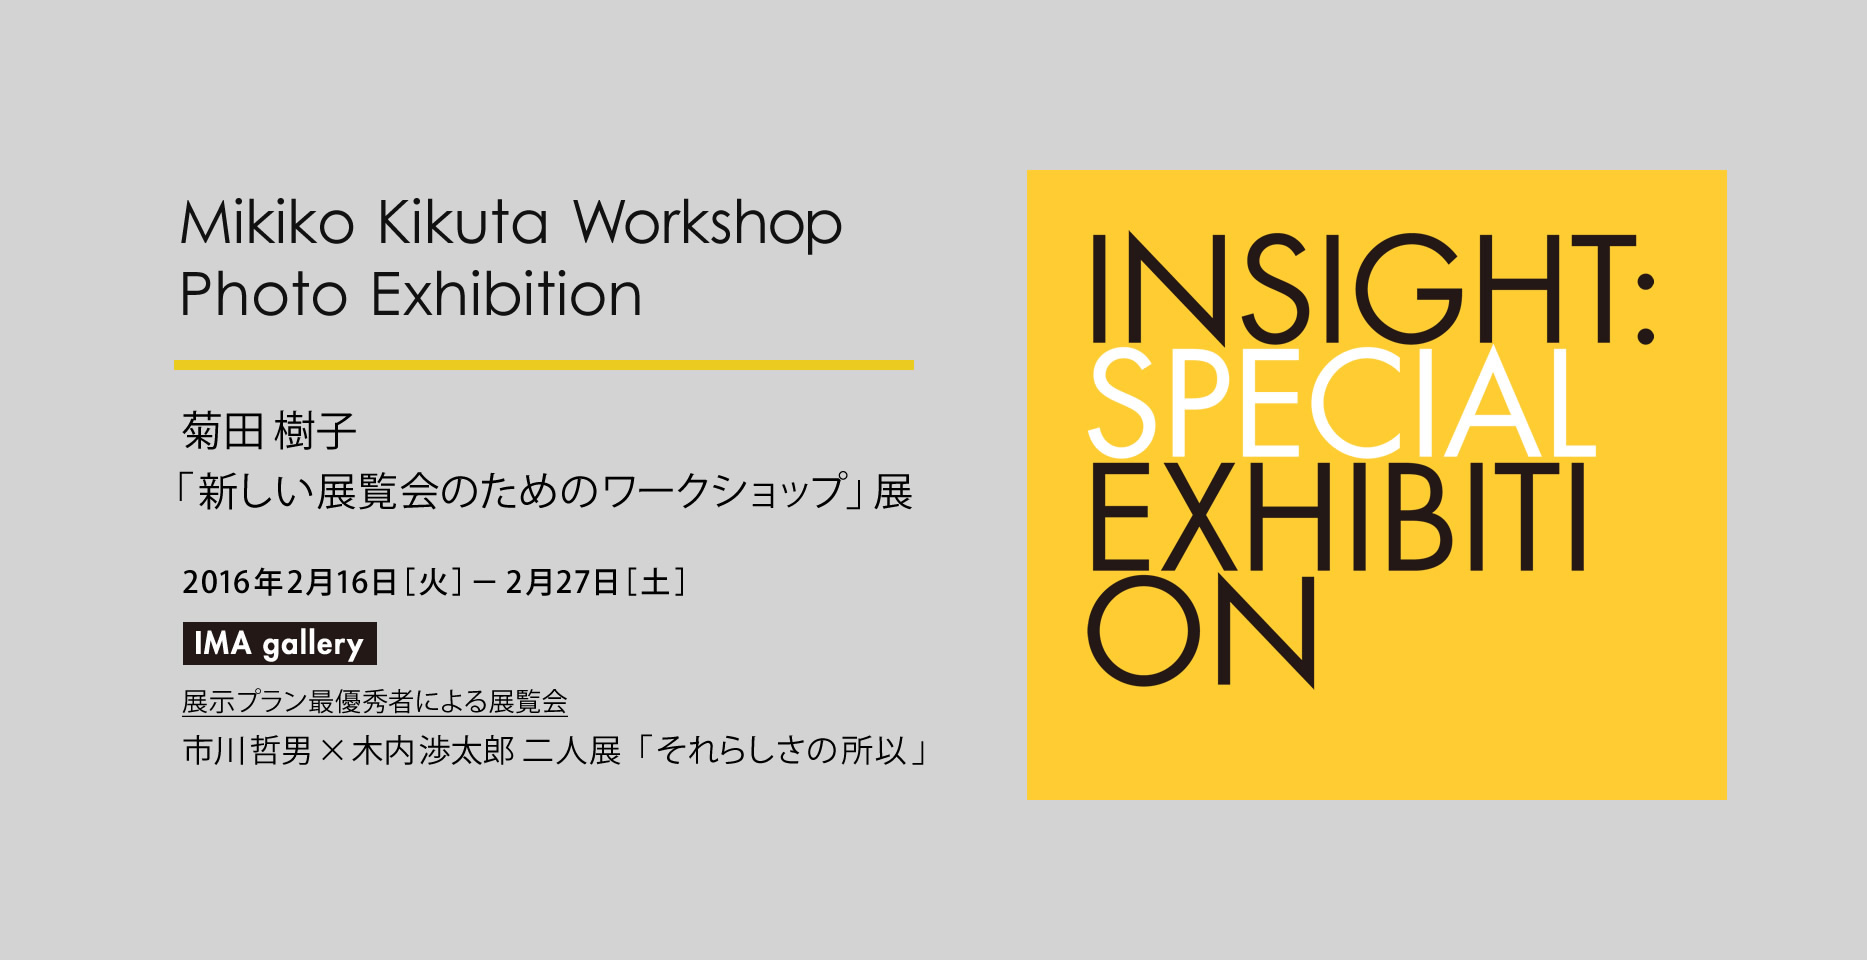 Mikiko Kikuta Workshop Photo Exhibition